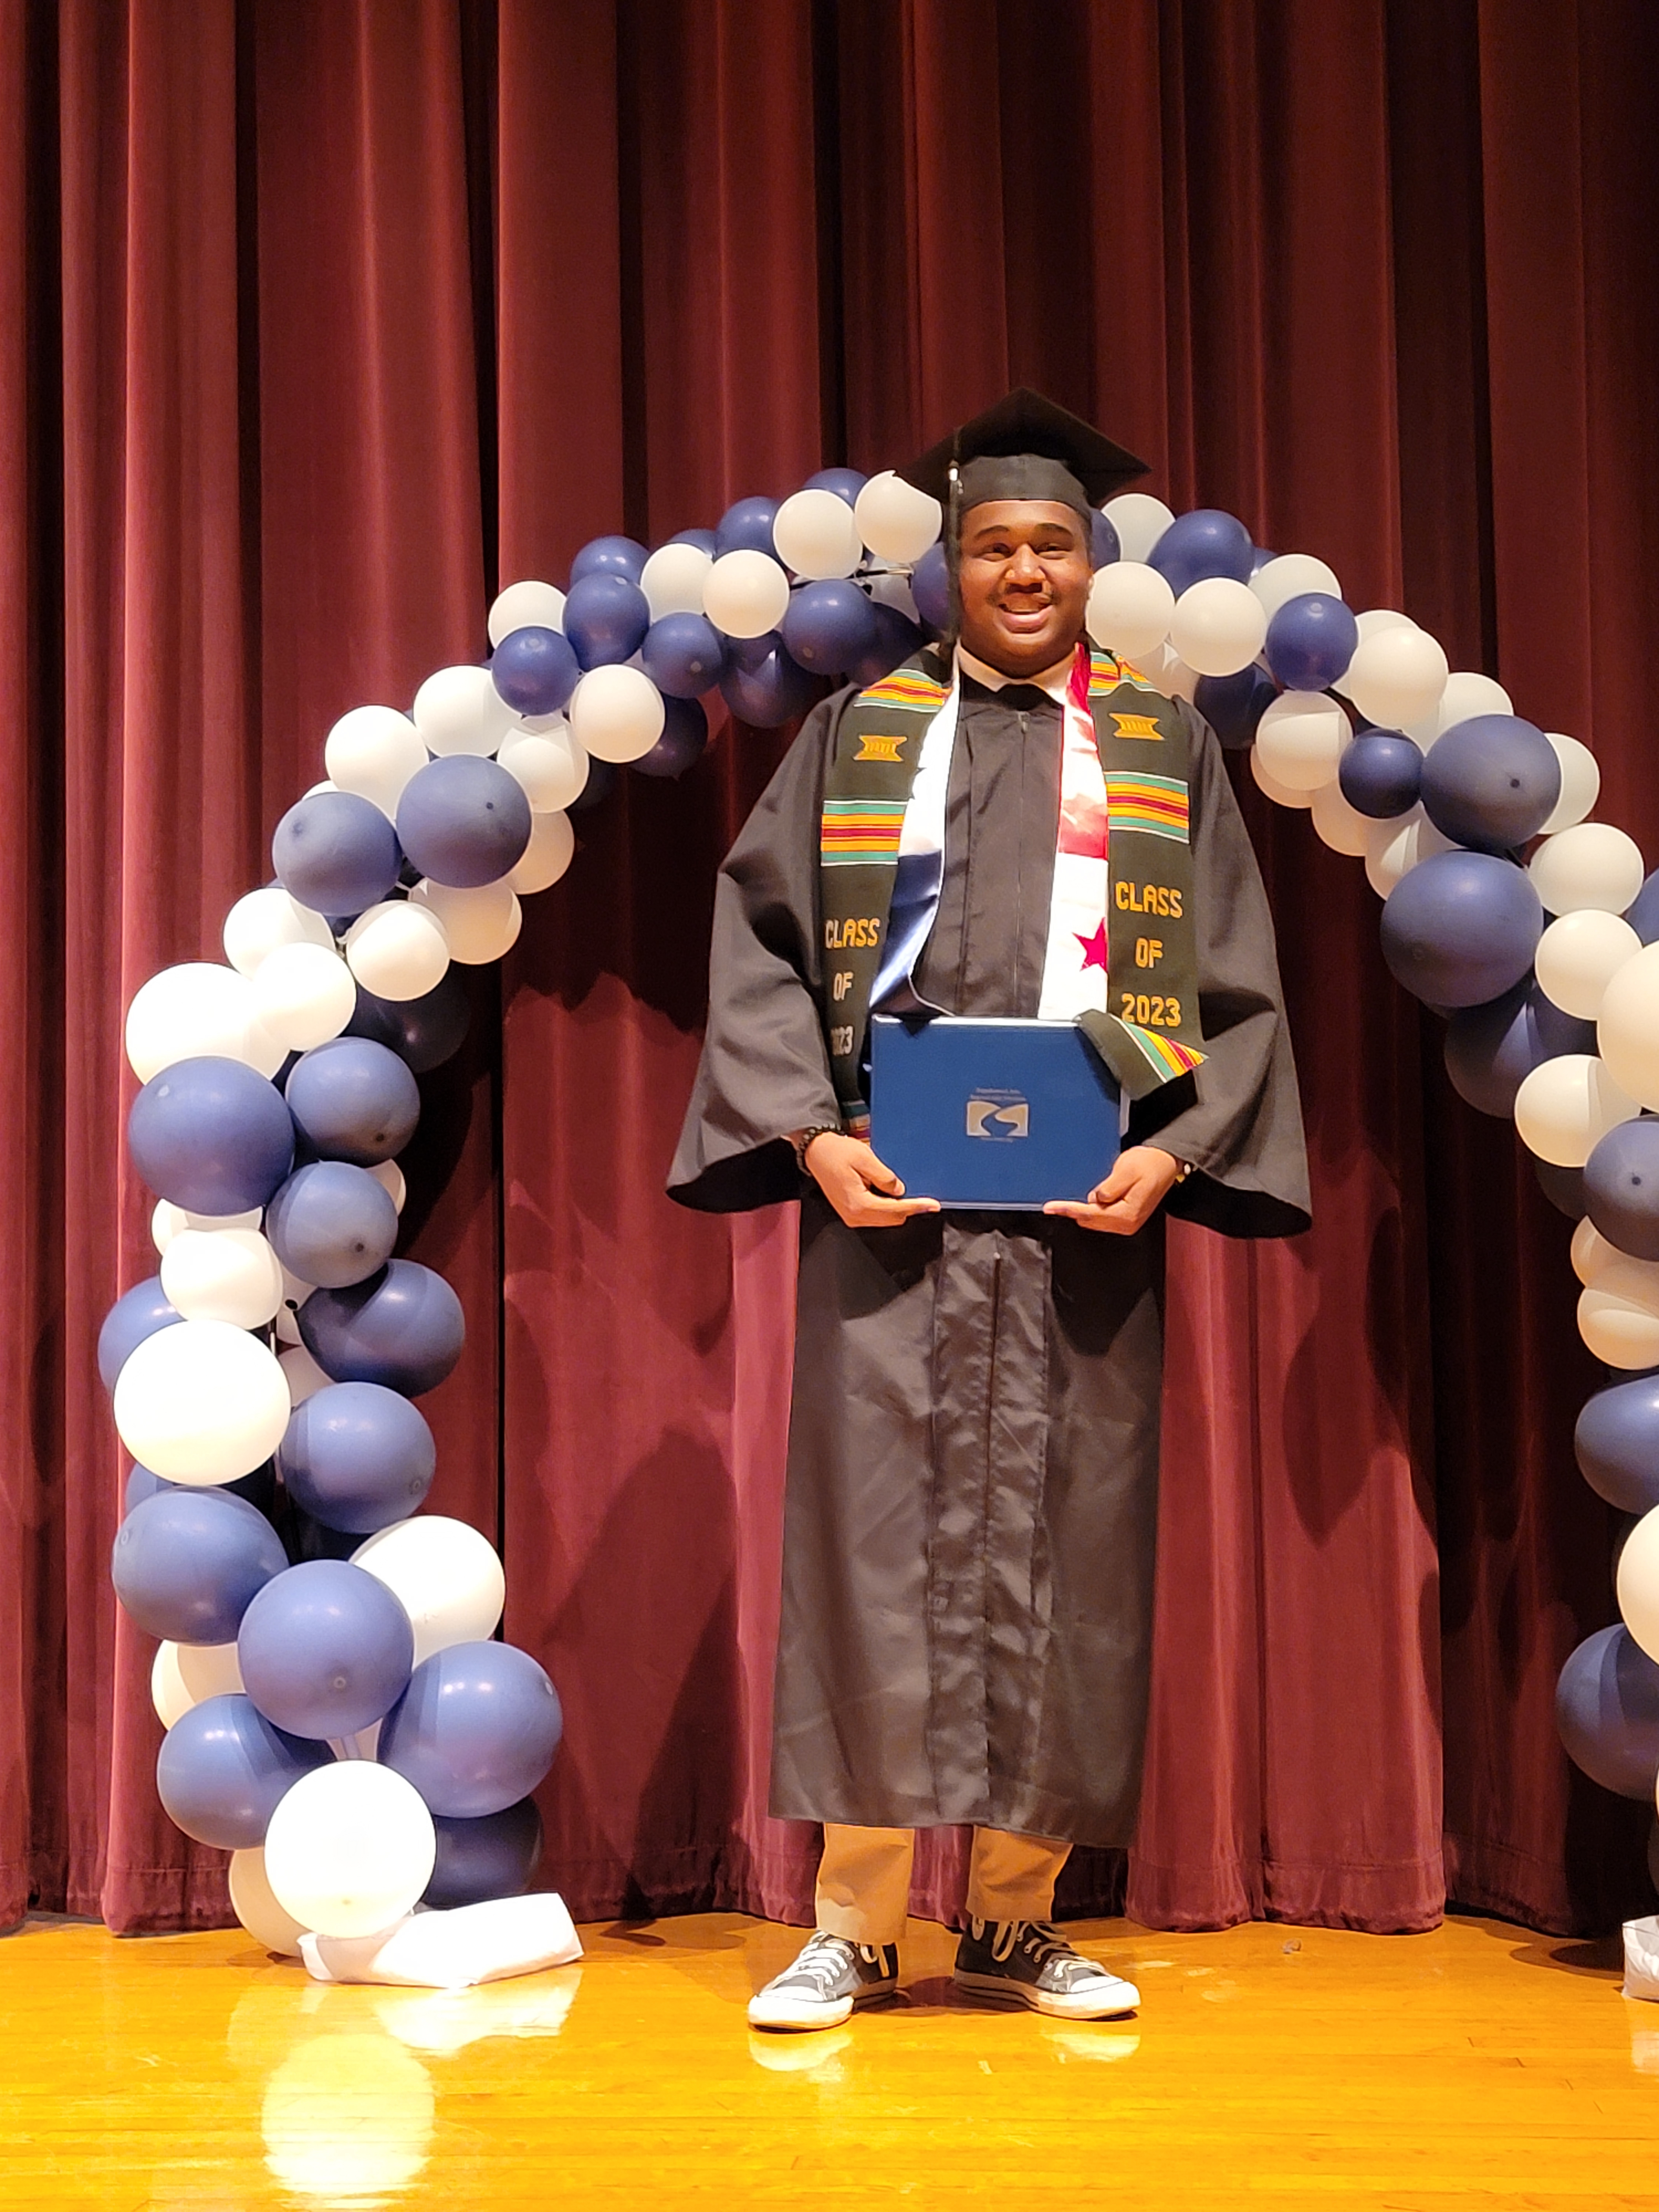 Paul Benjamin poses in his graduation cap and gown